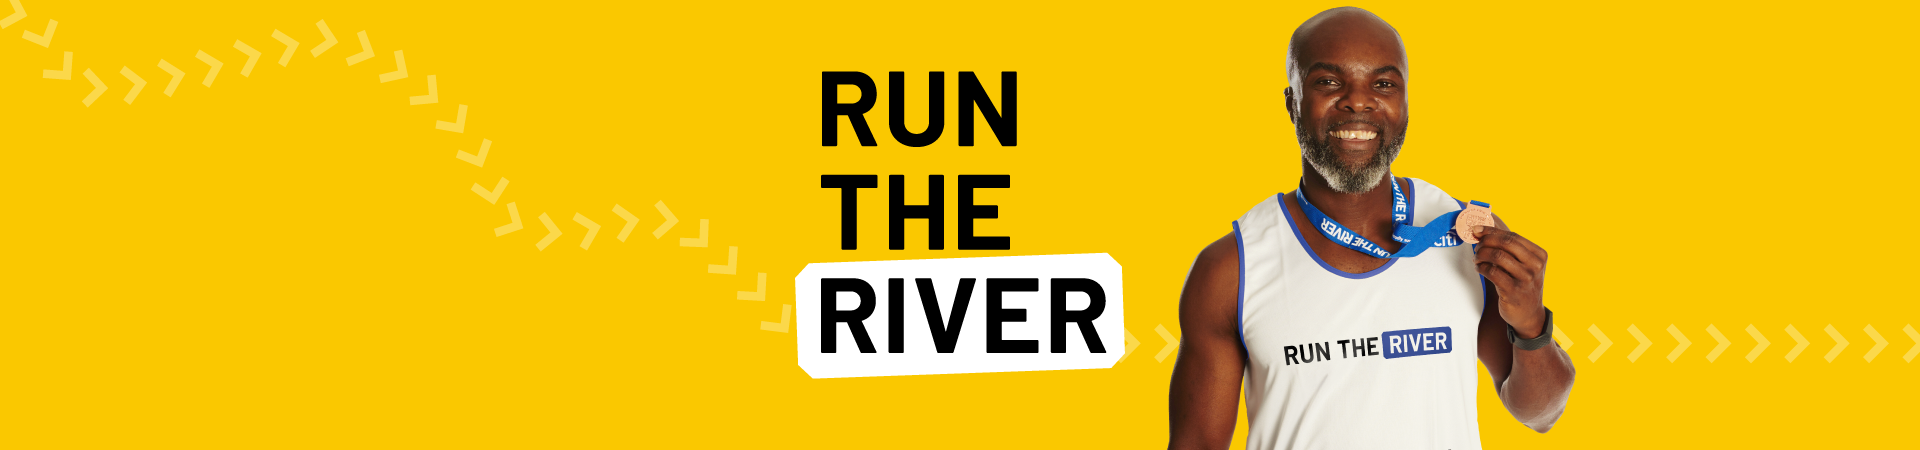 Run the River